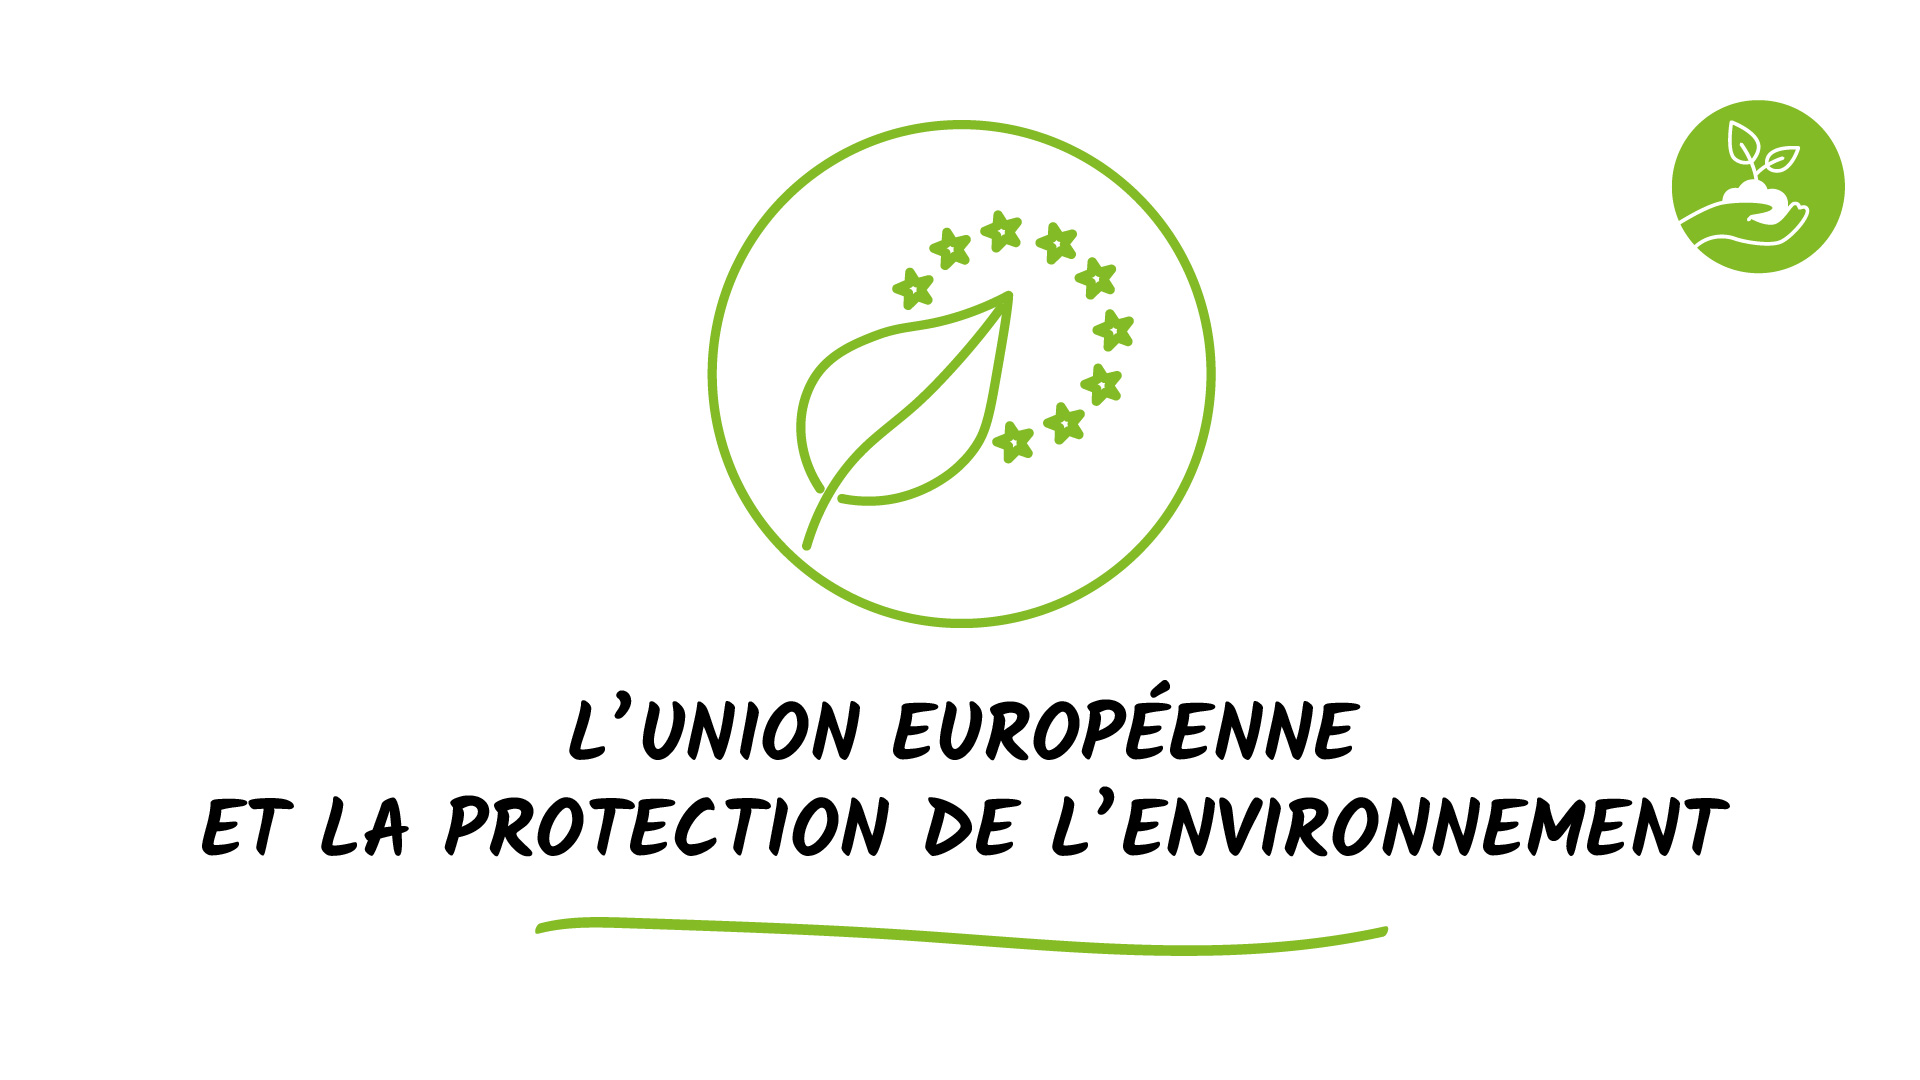 L'Union européenne et la protection de l'environnement